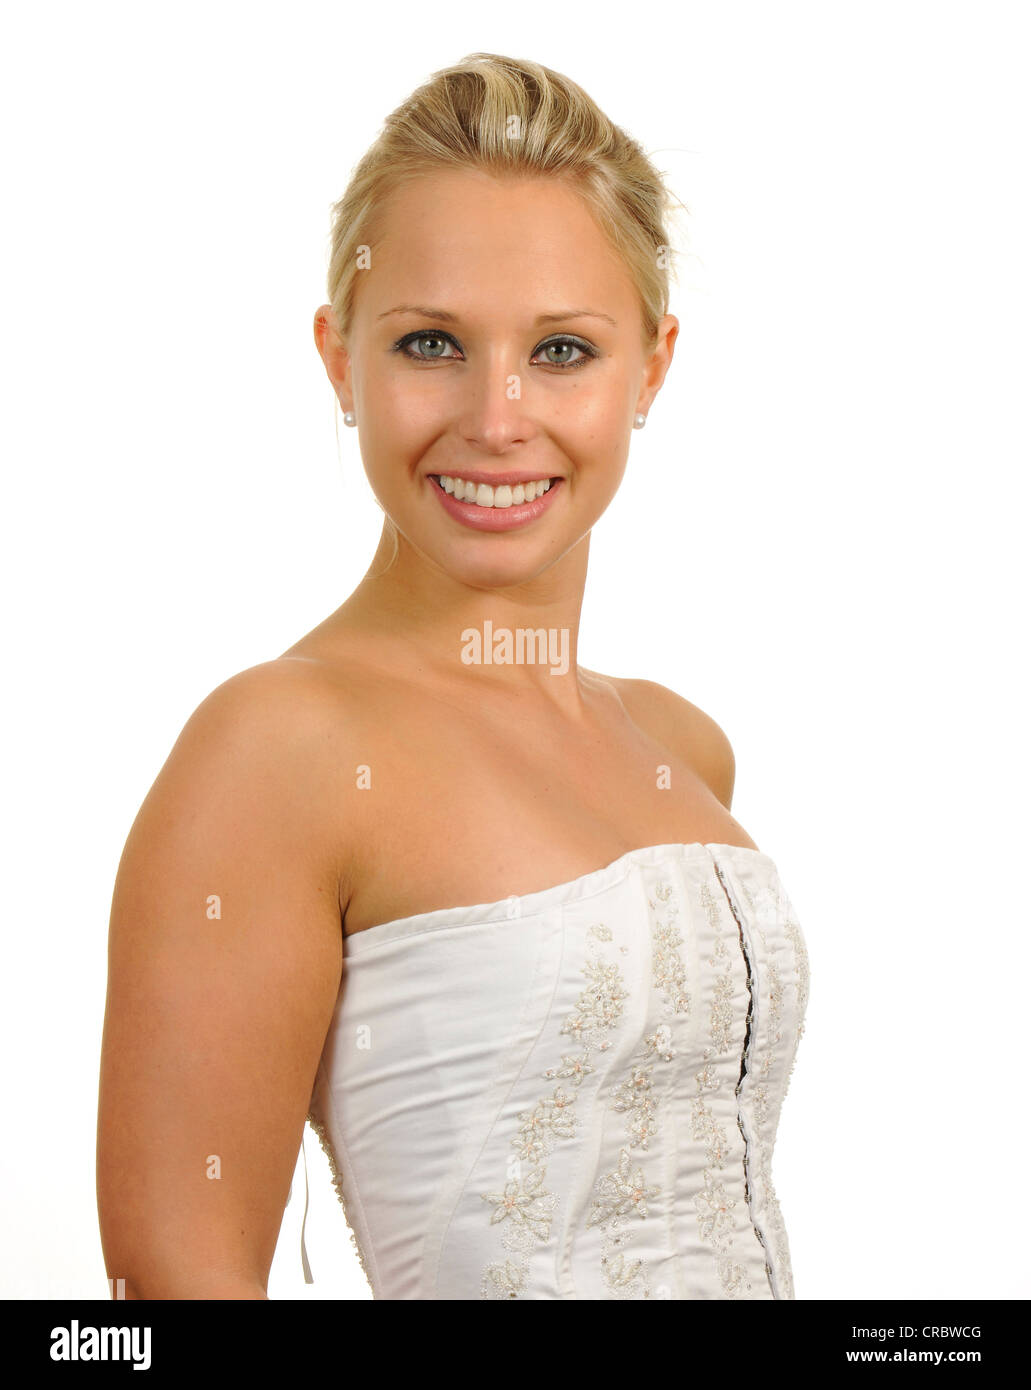 Jeune femme portant un haut bustier blanc, portrait Photo Stock - Alamy